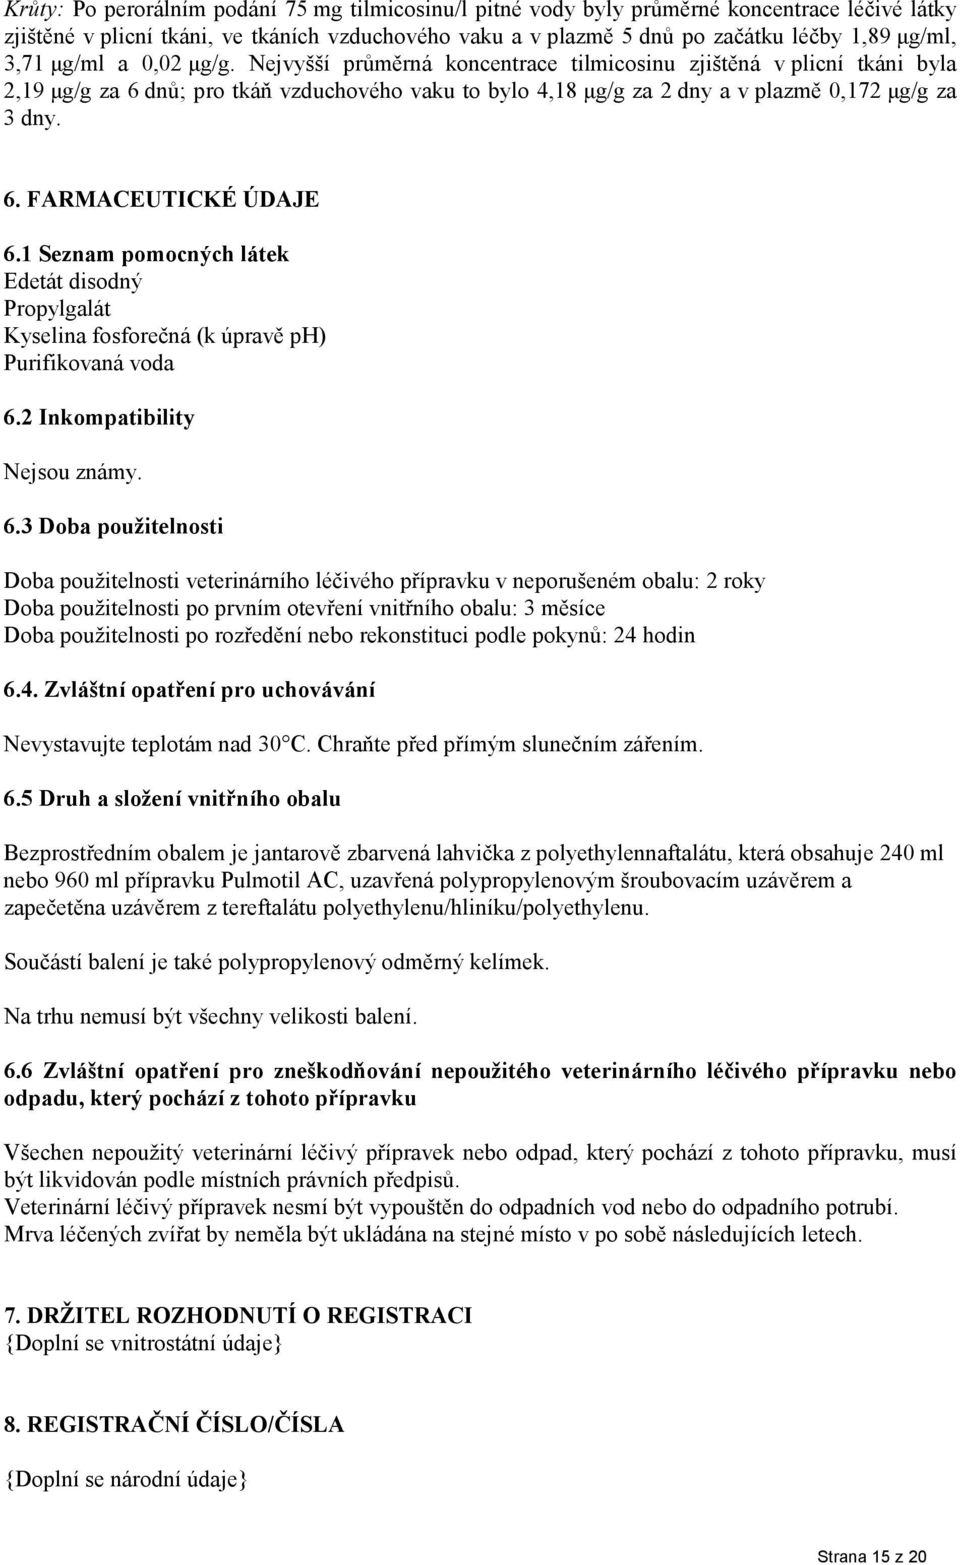 1 Seznam pomocných látek Edetát disodný Propylgalát Kyselina fosforečná (k úpravě ph) Purifikovaná voda 6.